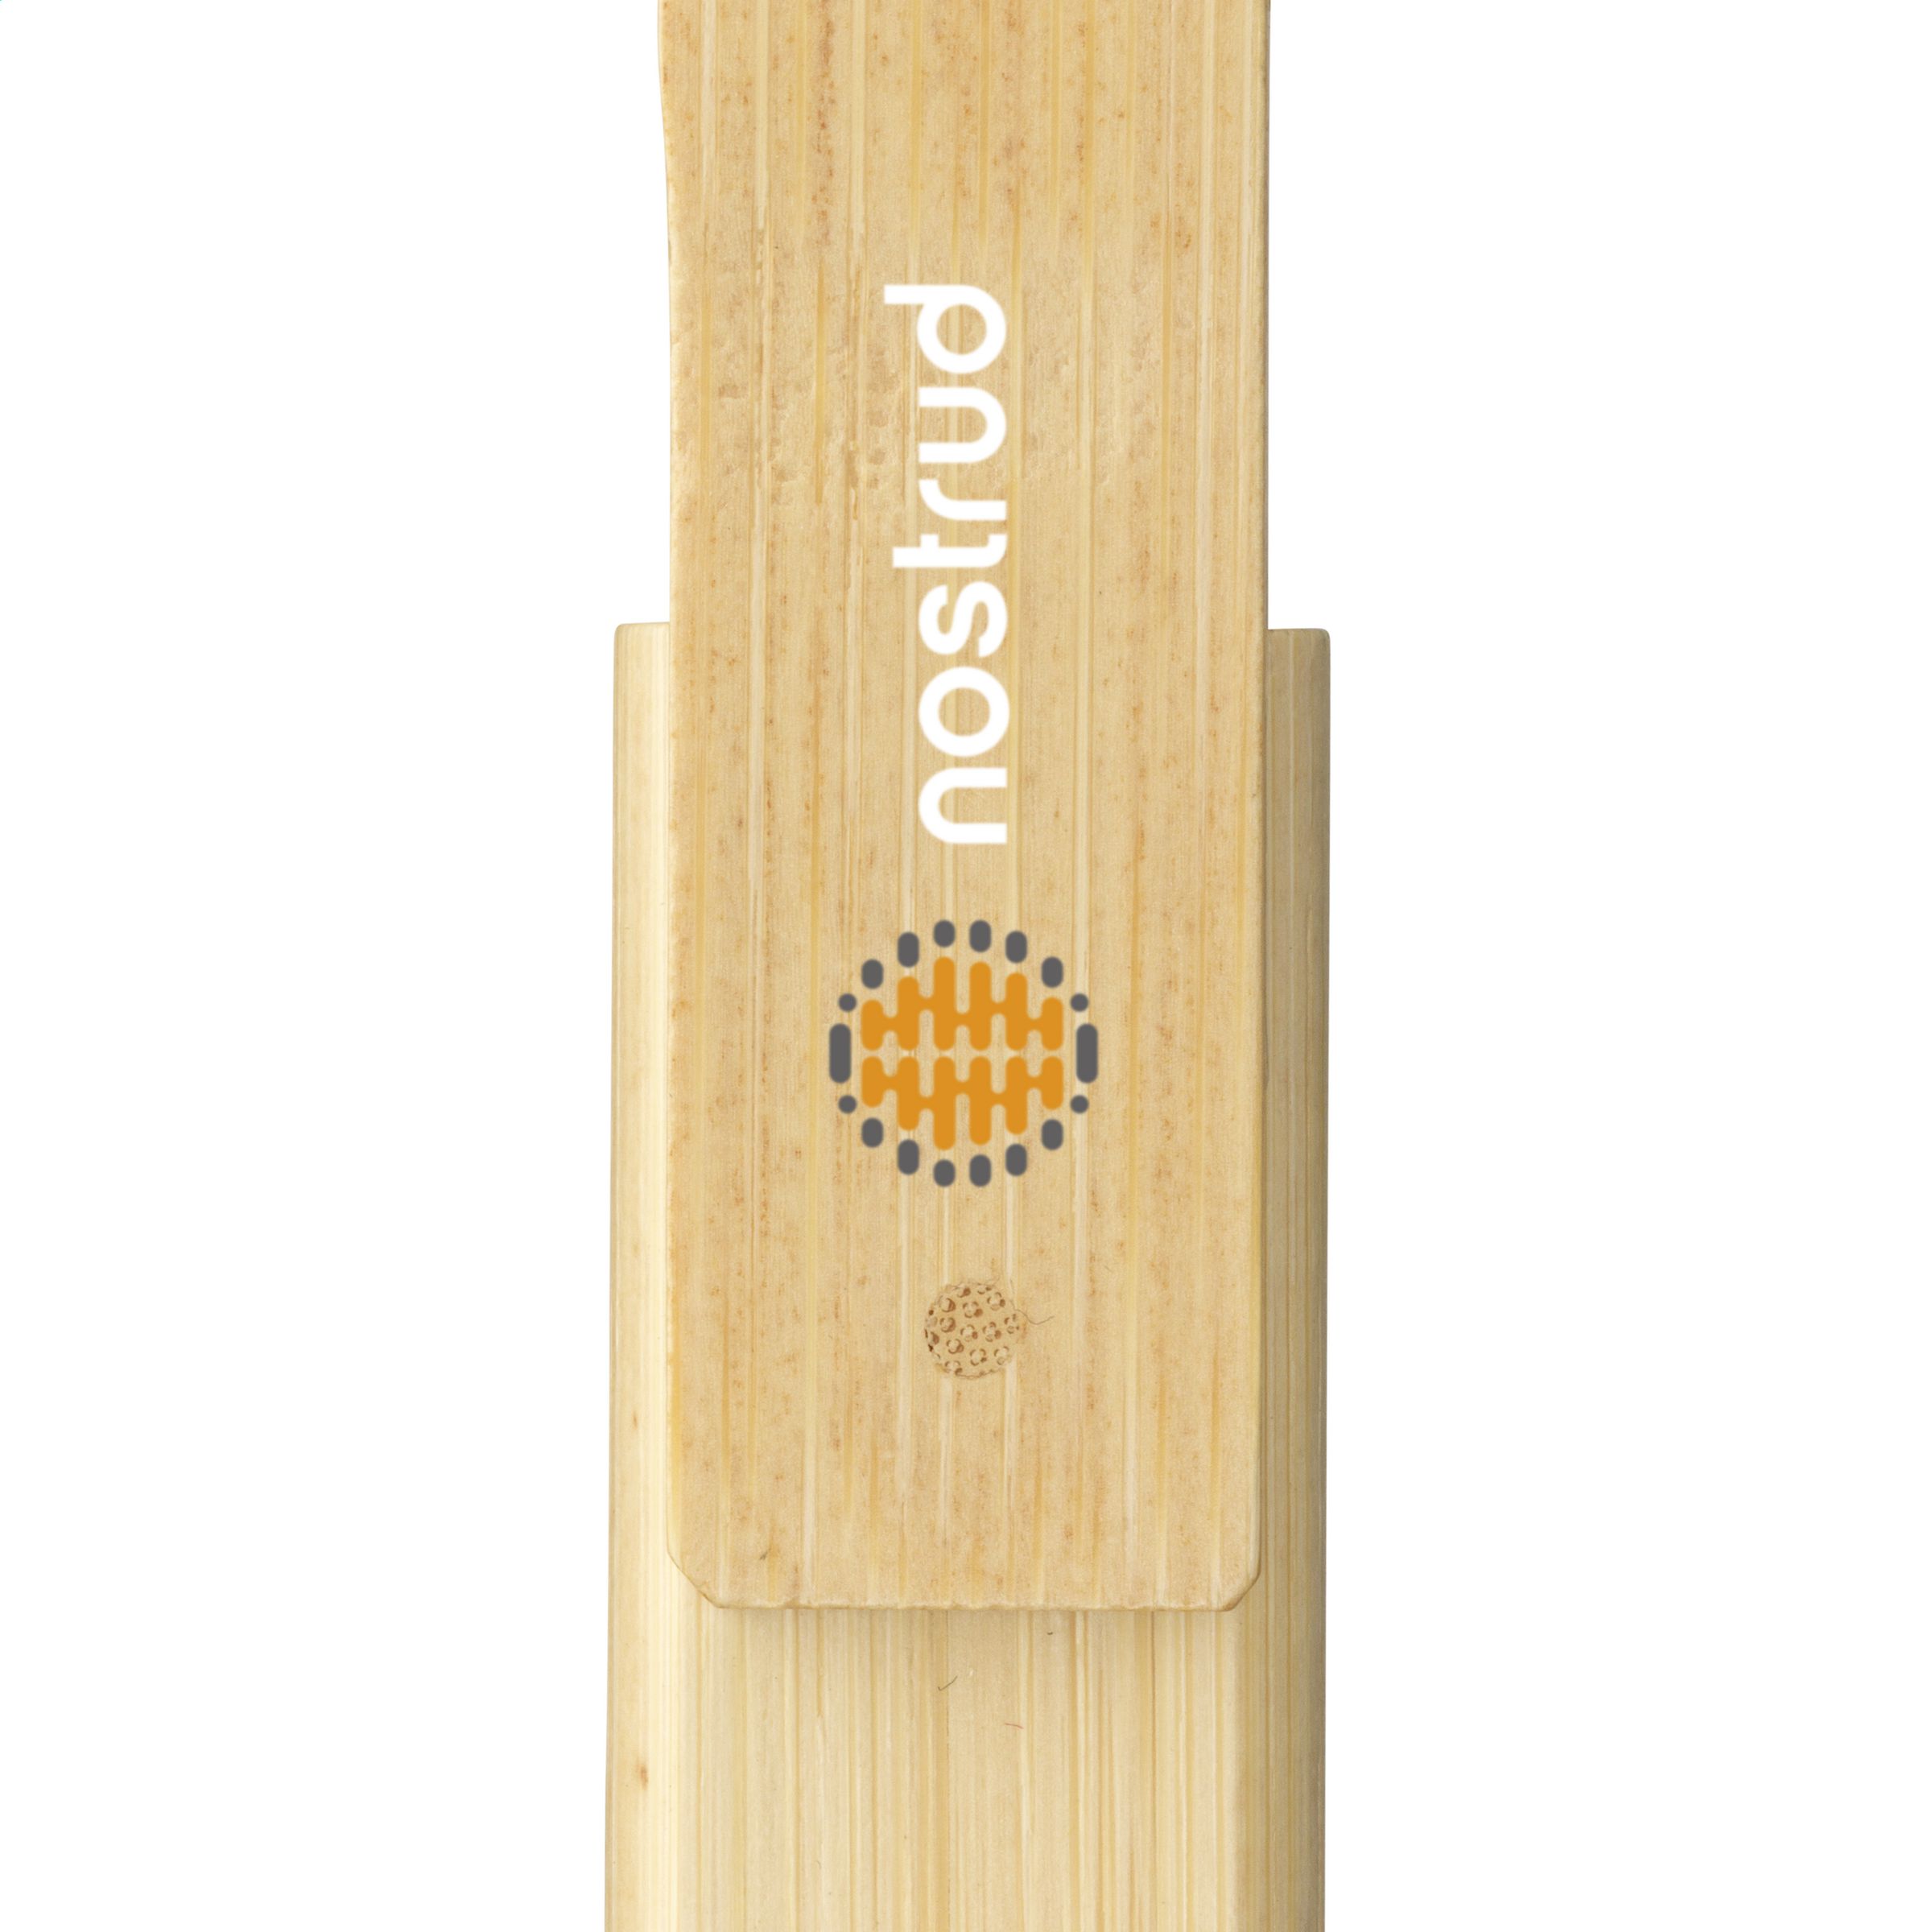 ECO Memoria USB de Bambú - Stonnall - Bilbao 